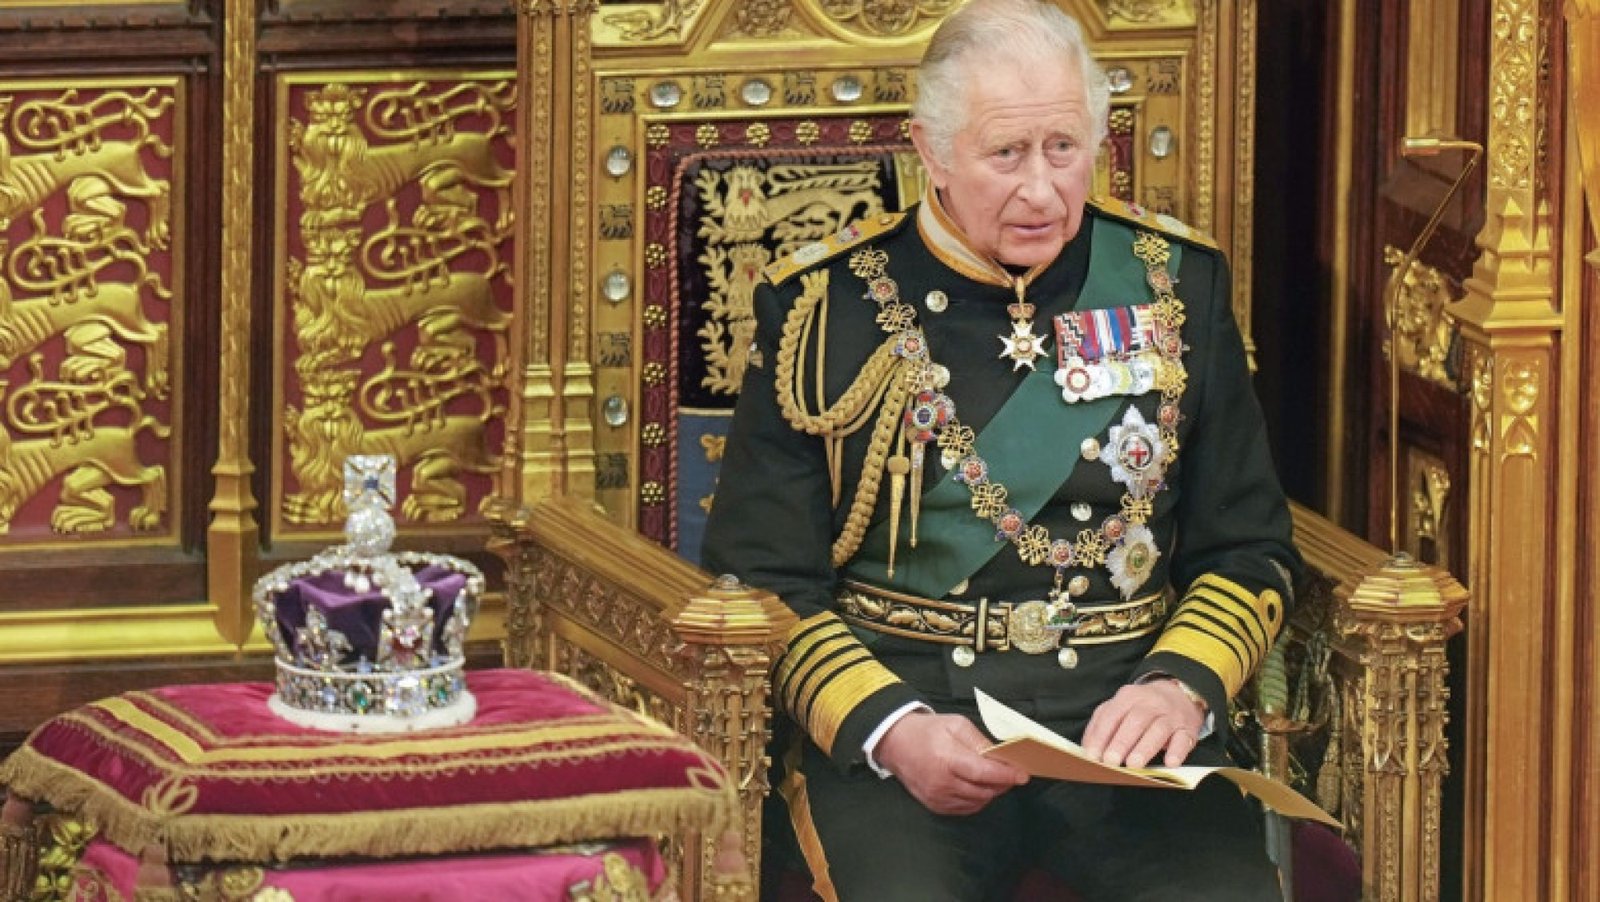 مجلس الجلوس على العرش يعلن رسميا تنصيب تشارلز الثالث ملكا للمملكة المتحدة